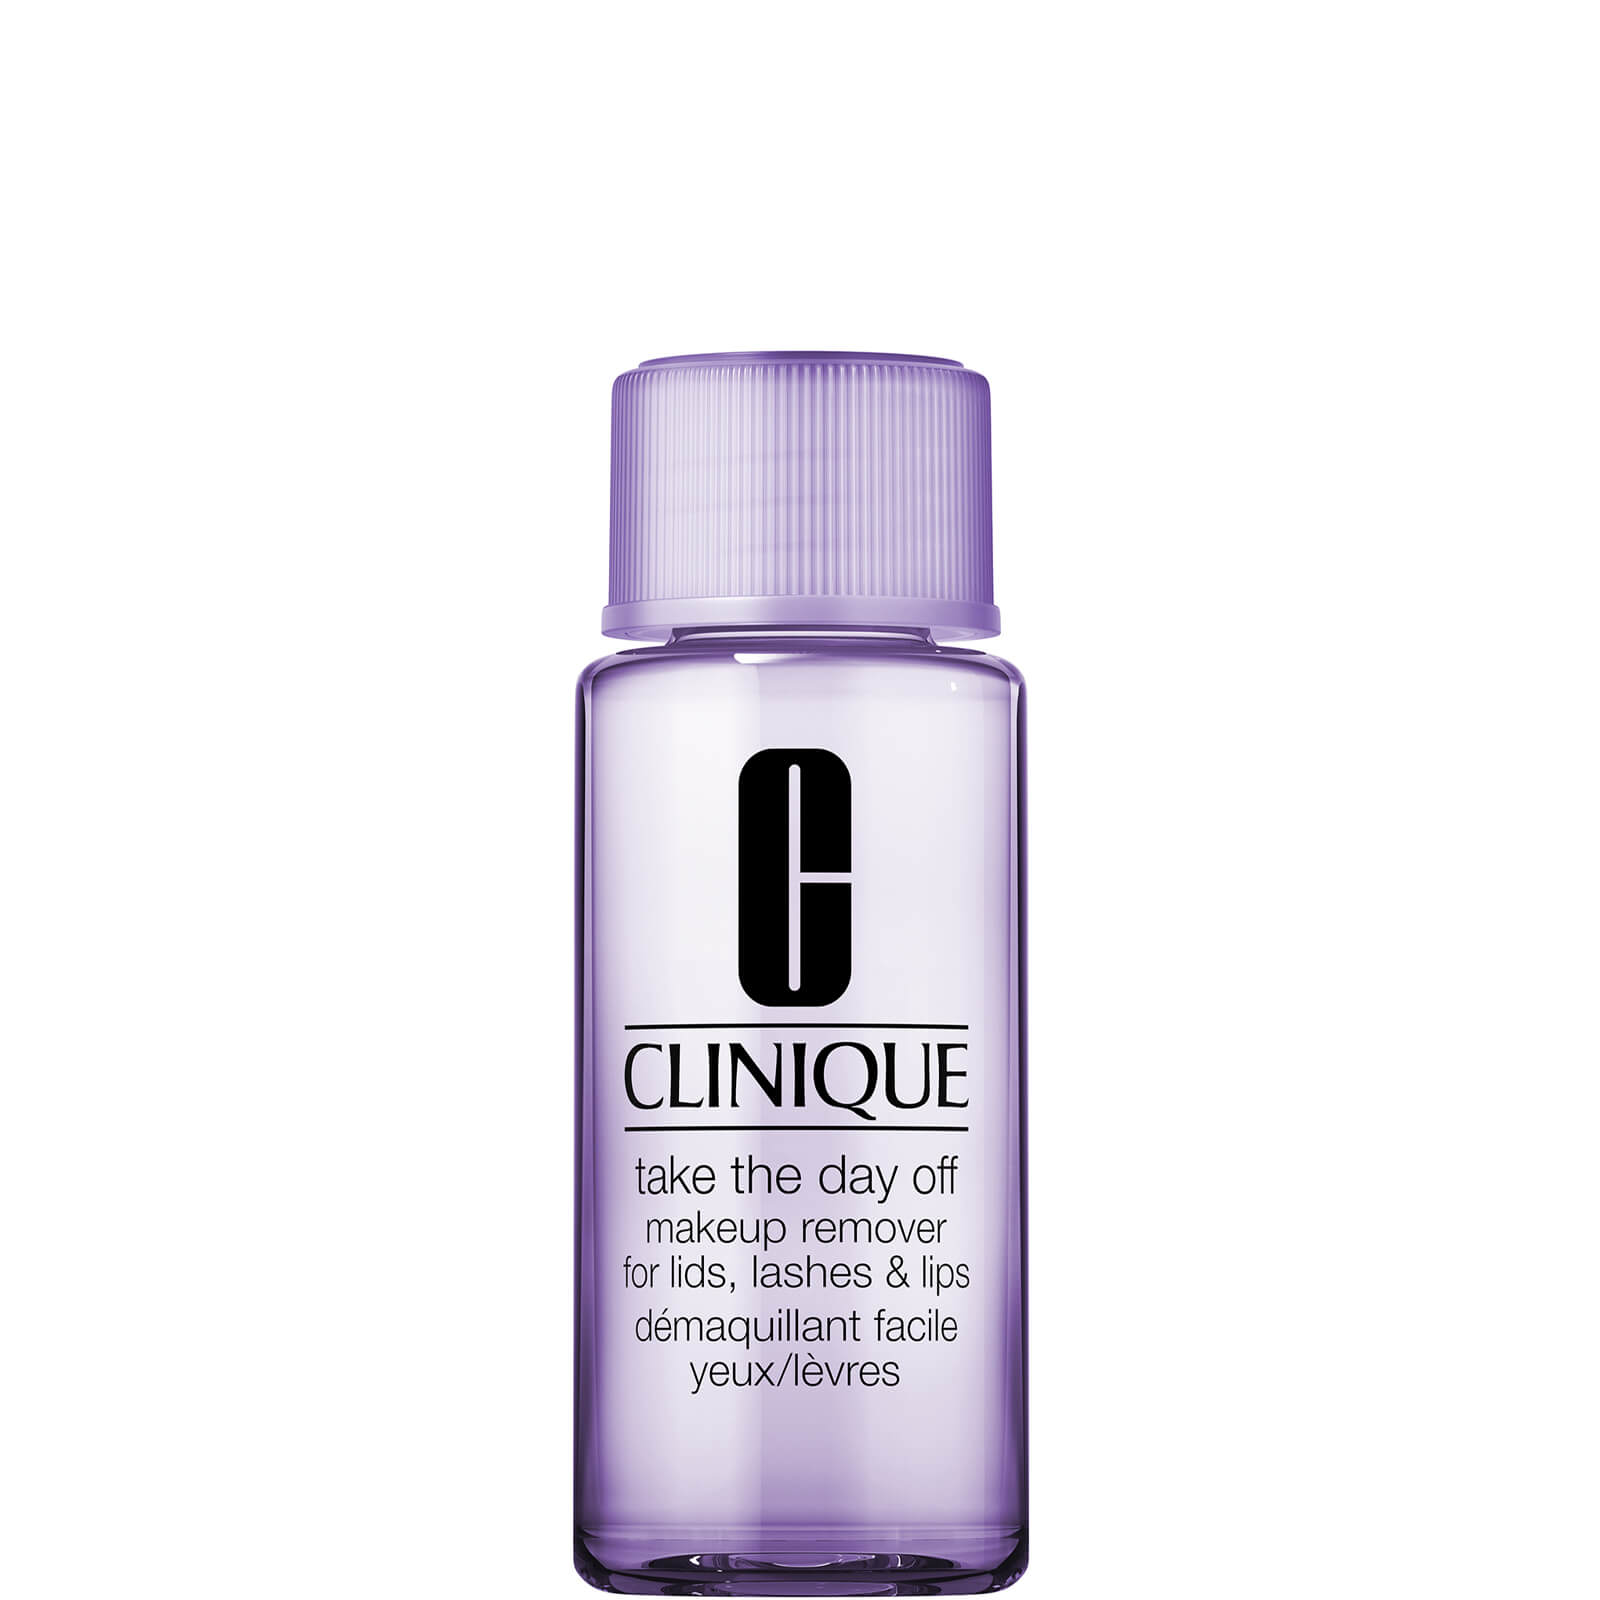 Image of Clinique Mini Take The Day Off Makeup Remover for Occhi, Ciglia e Labbra 50ml